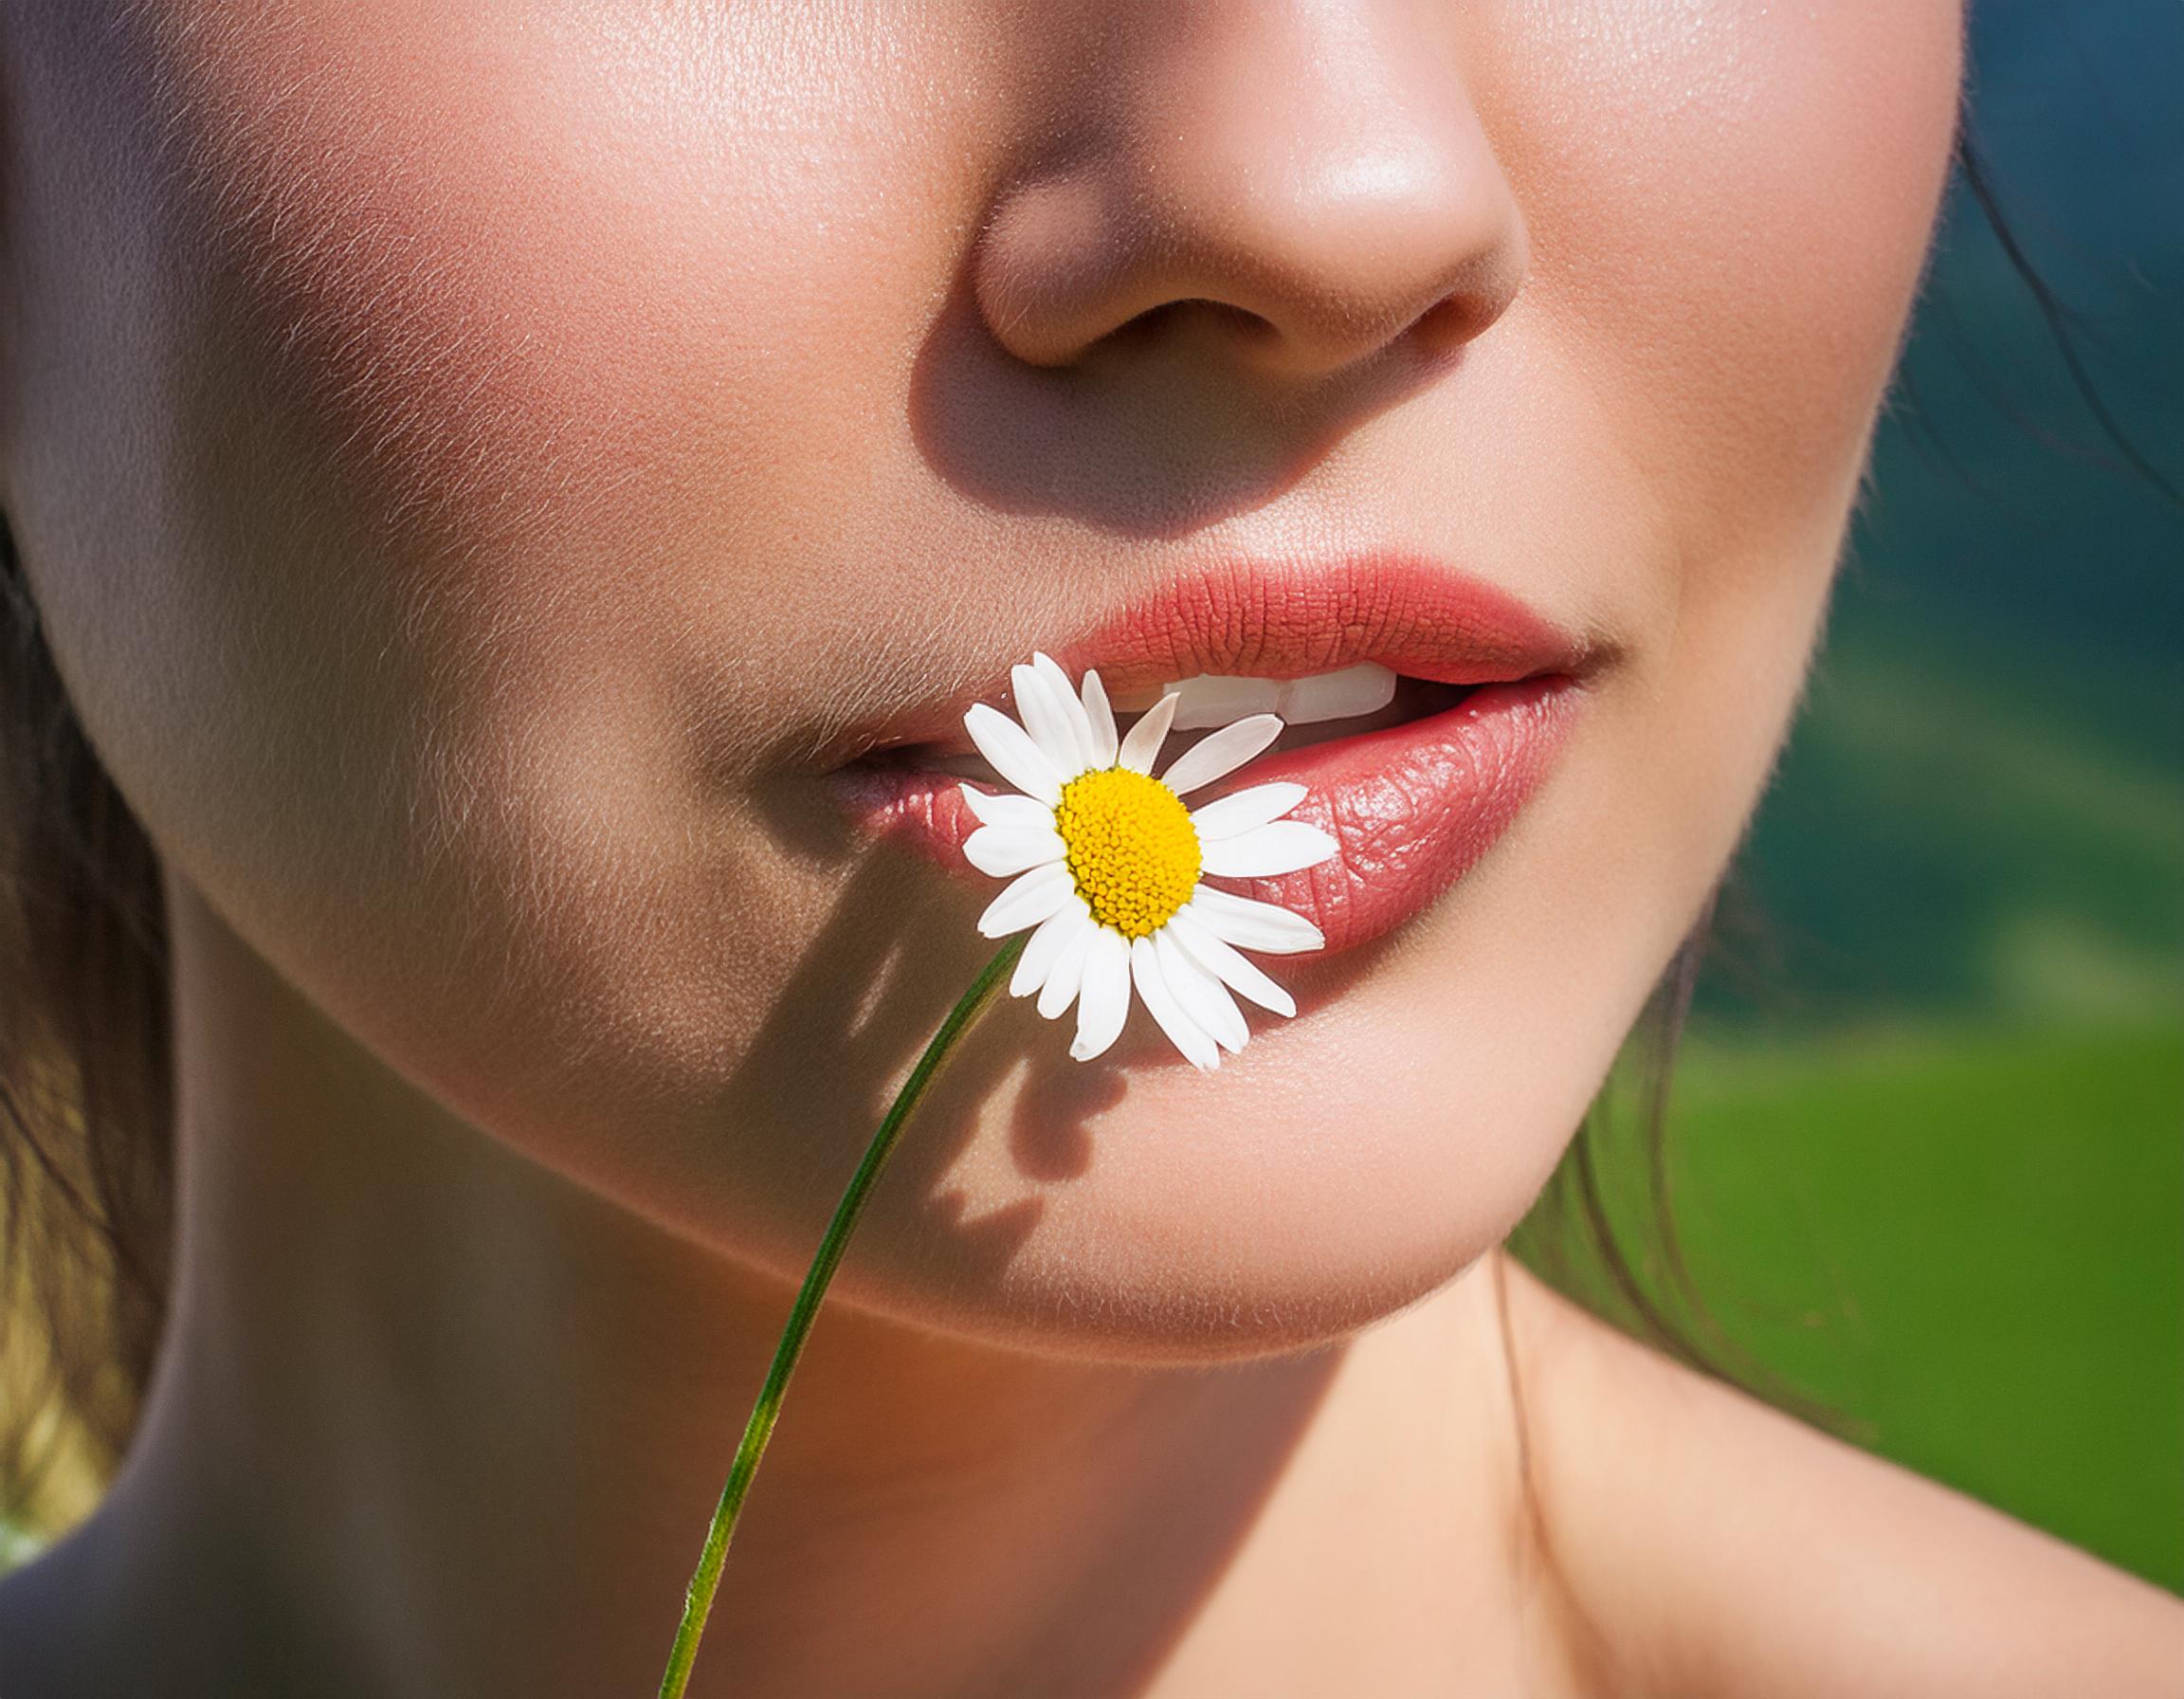 Frau mit gesunden Zähnen hält eine Kamillenblüte an ihre Lippen.